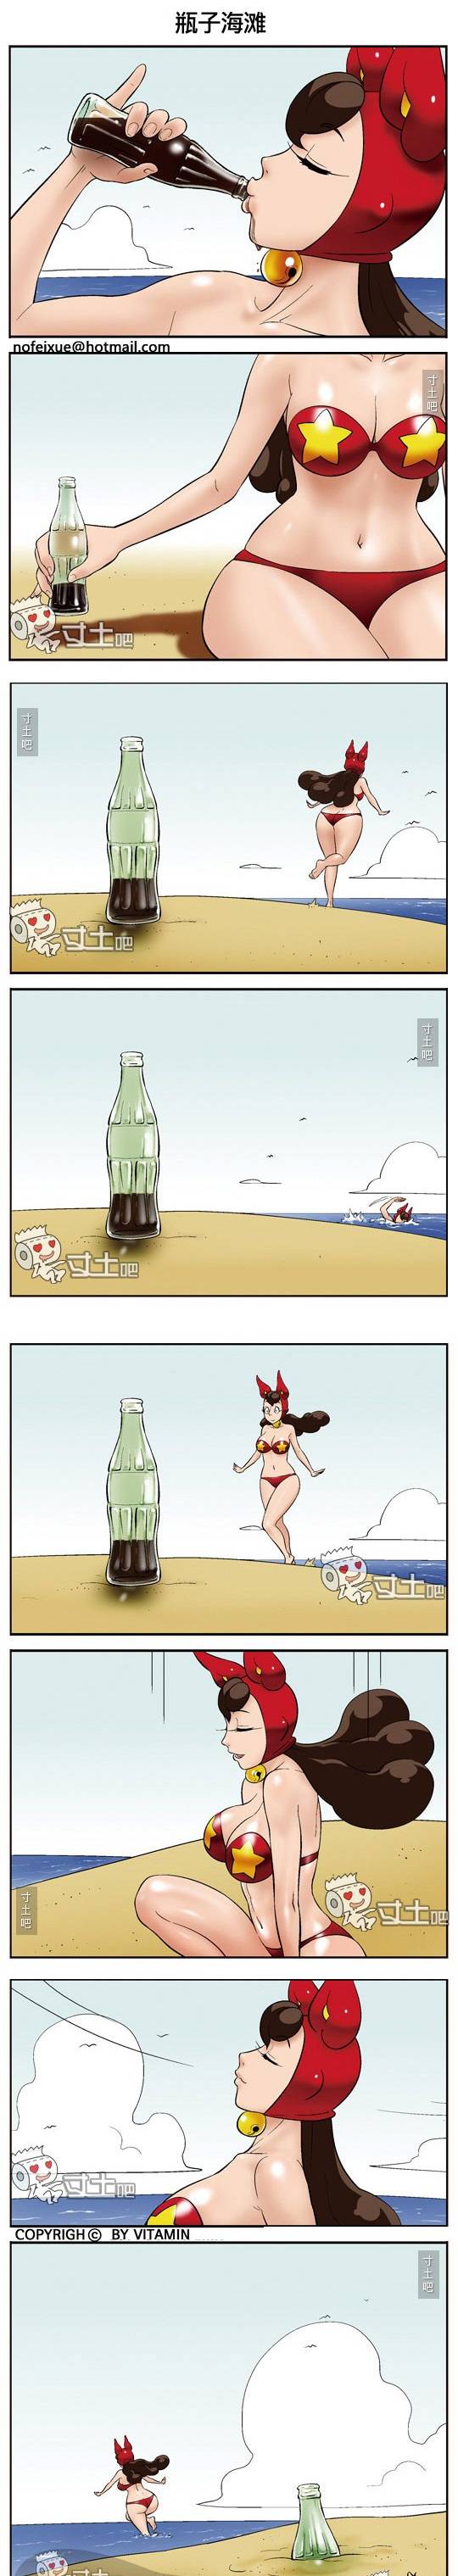 邪恶少女无节操漫画 瓶子海滩